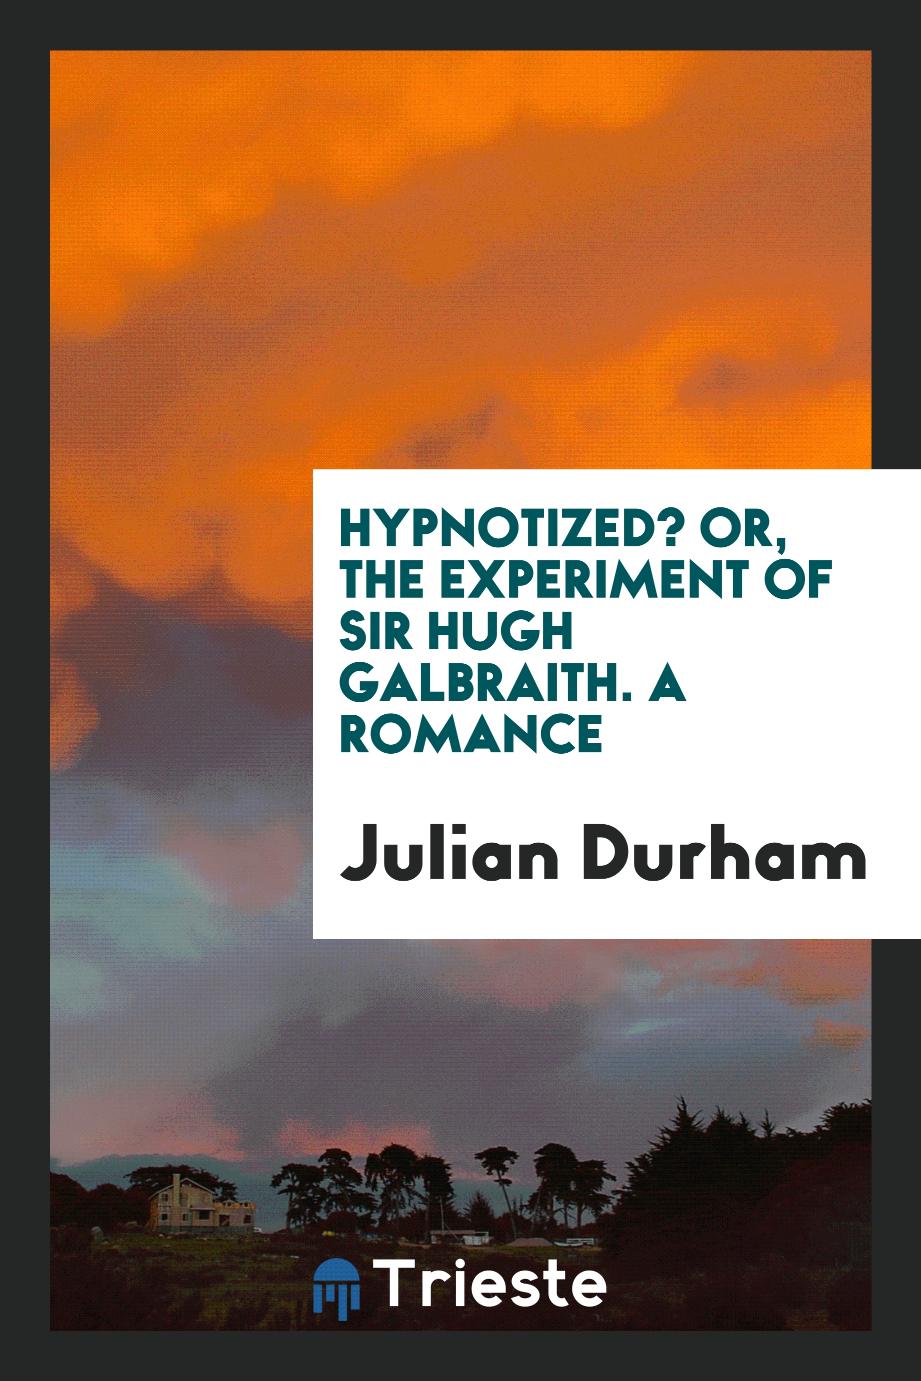 Hypnotized? or, The experiment of Sir Hugh Galbraith. A romance